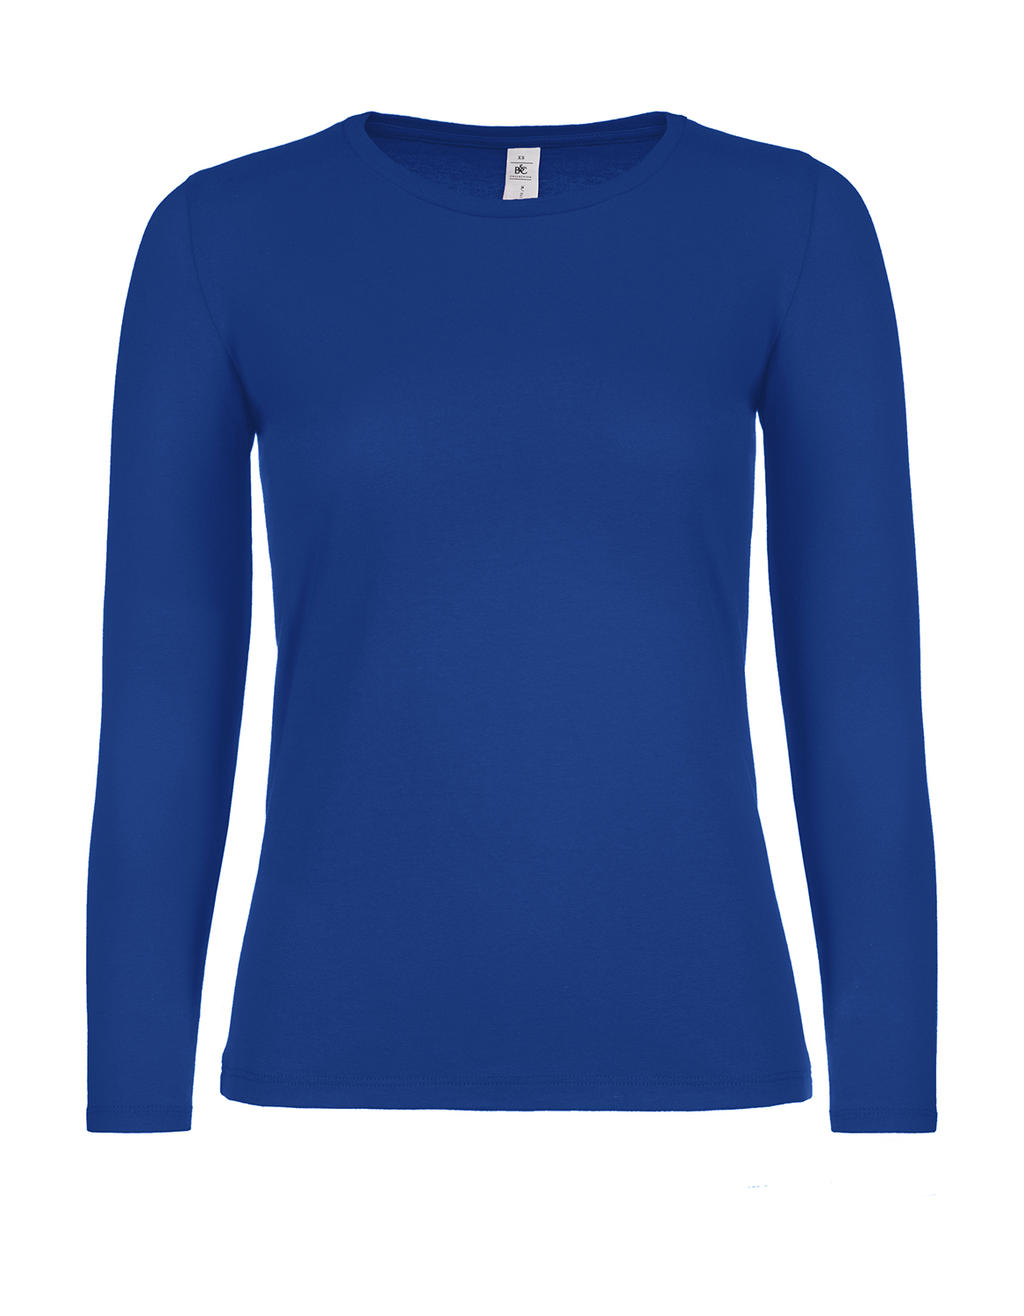 Dámske tričko s dlhými rukávmi #E150 - royal blue